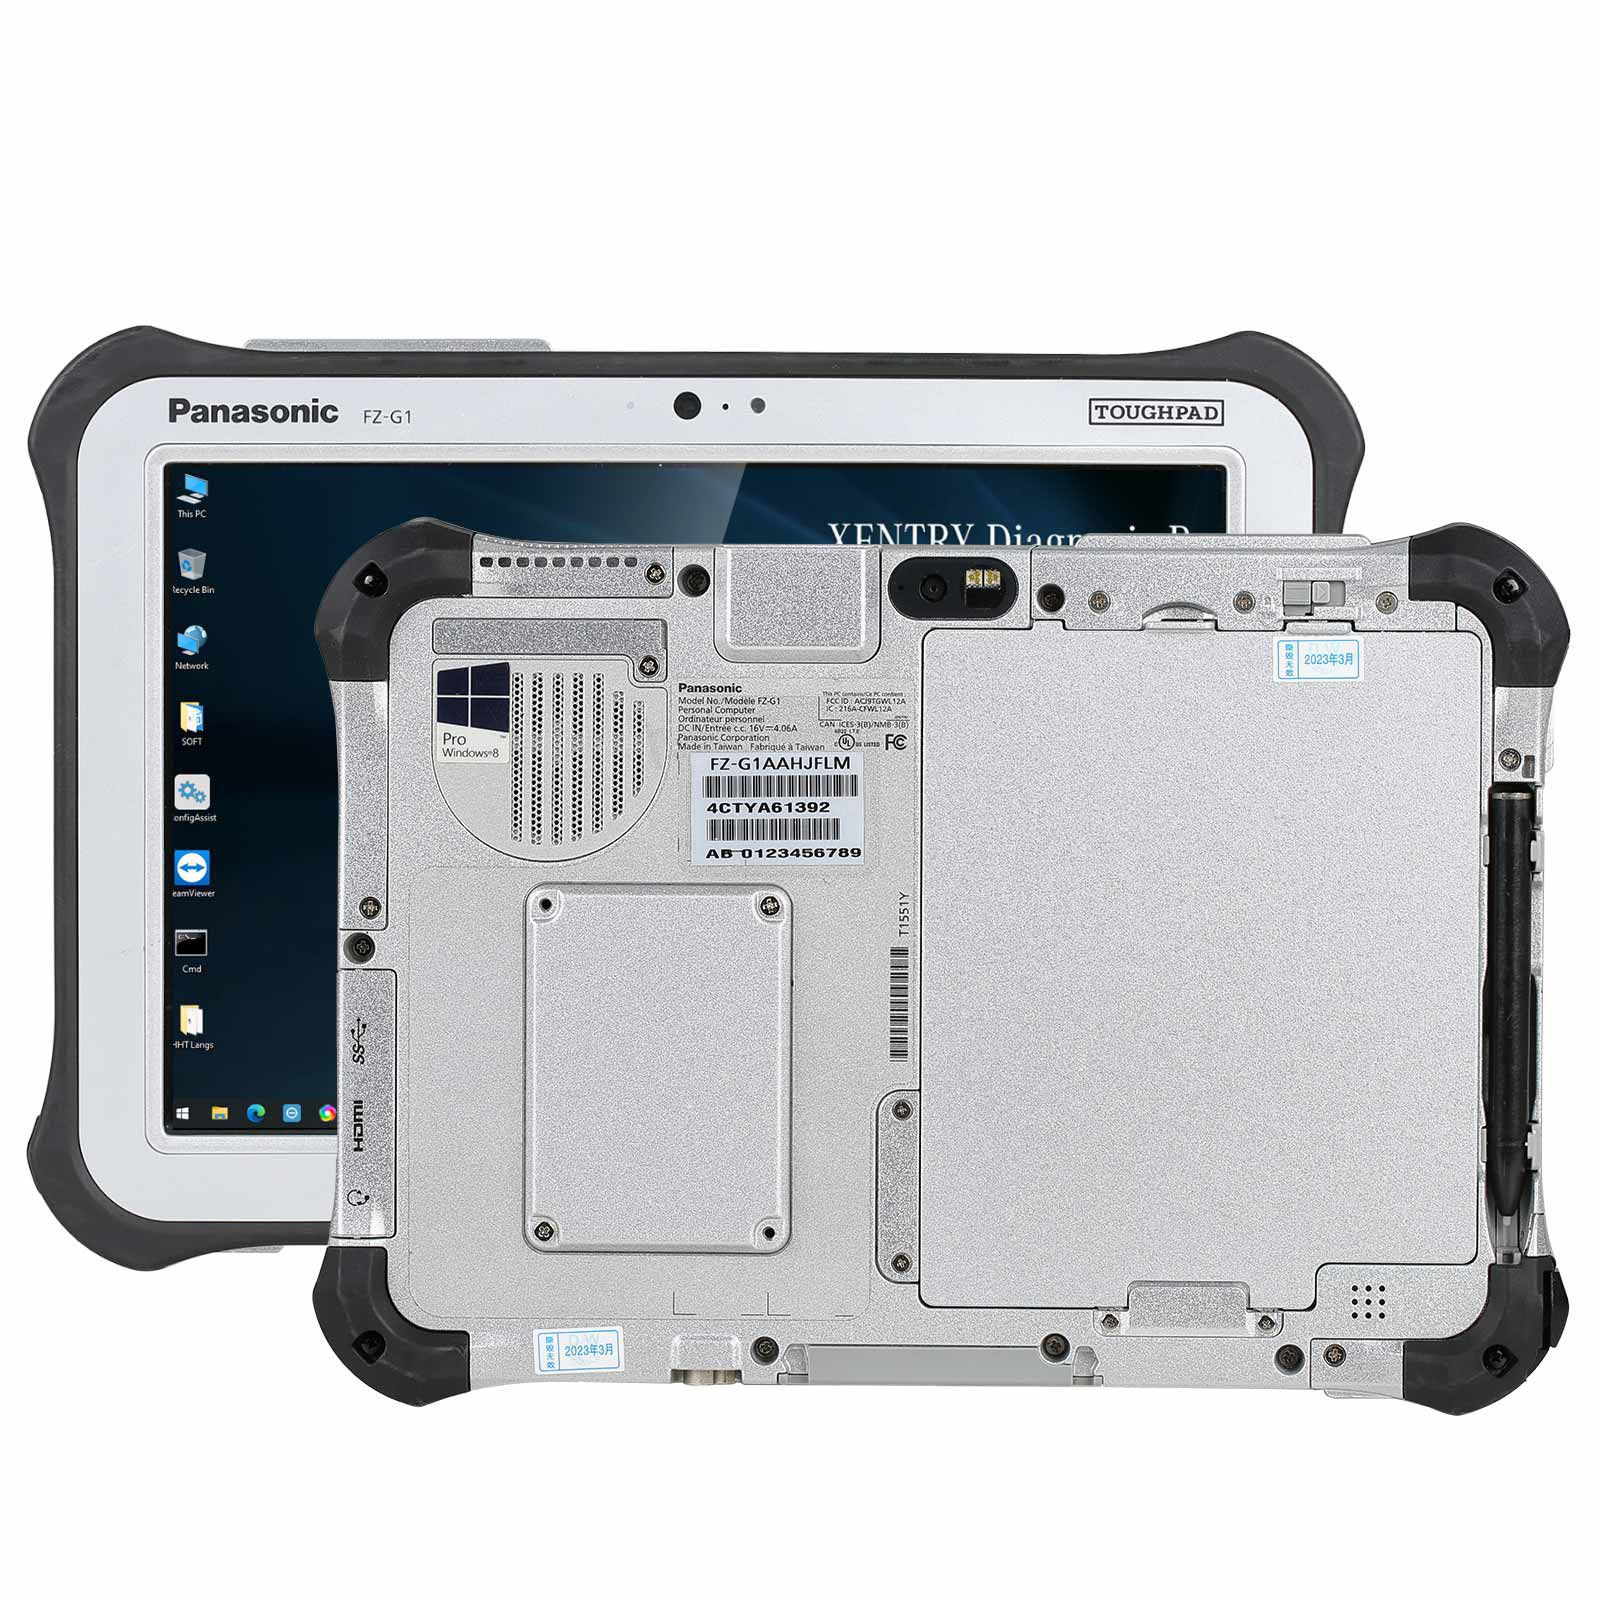 100% Original Panasonic FZ - G1 I5 3ème génération tablette 8G, v2023.3 MB Star 256g SSD win10 64 bits prêt à être installé